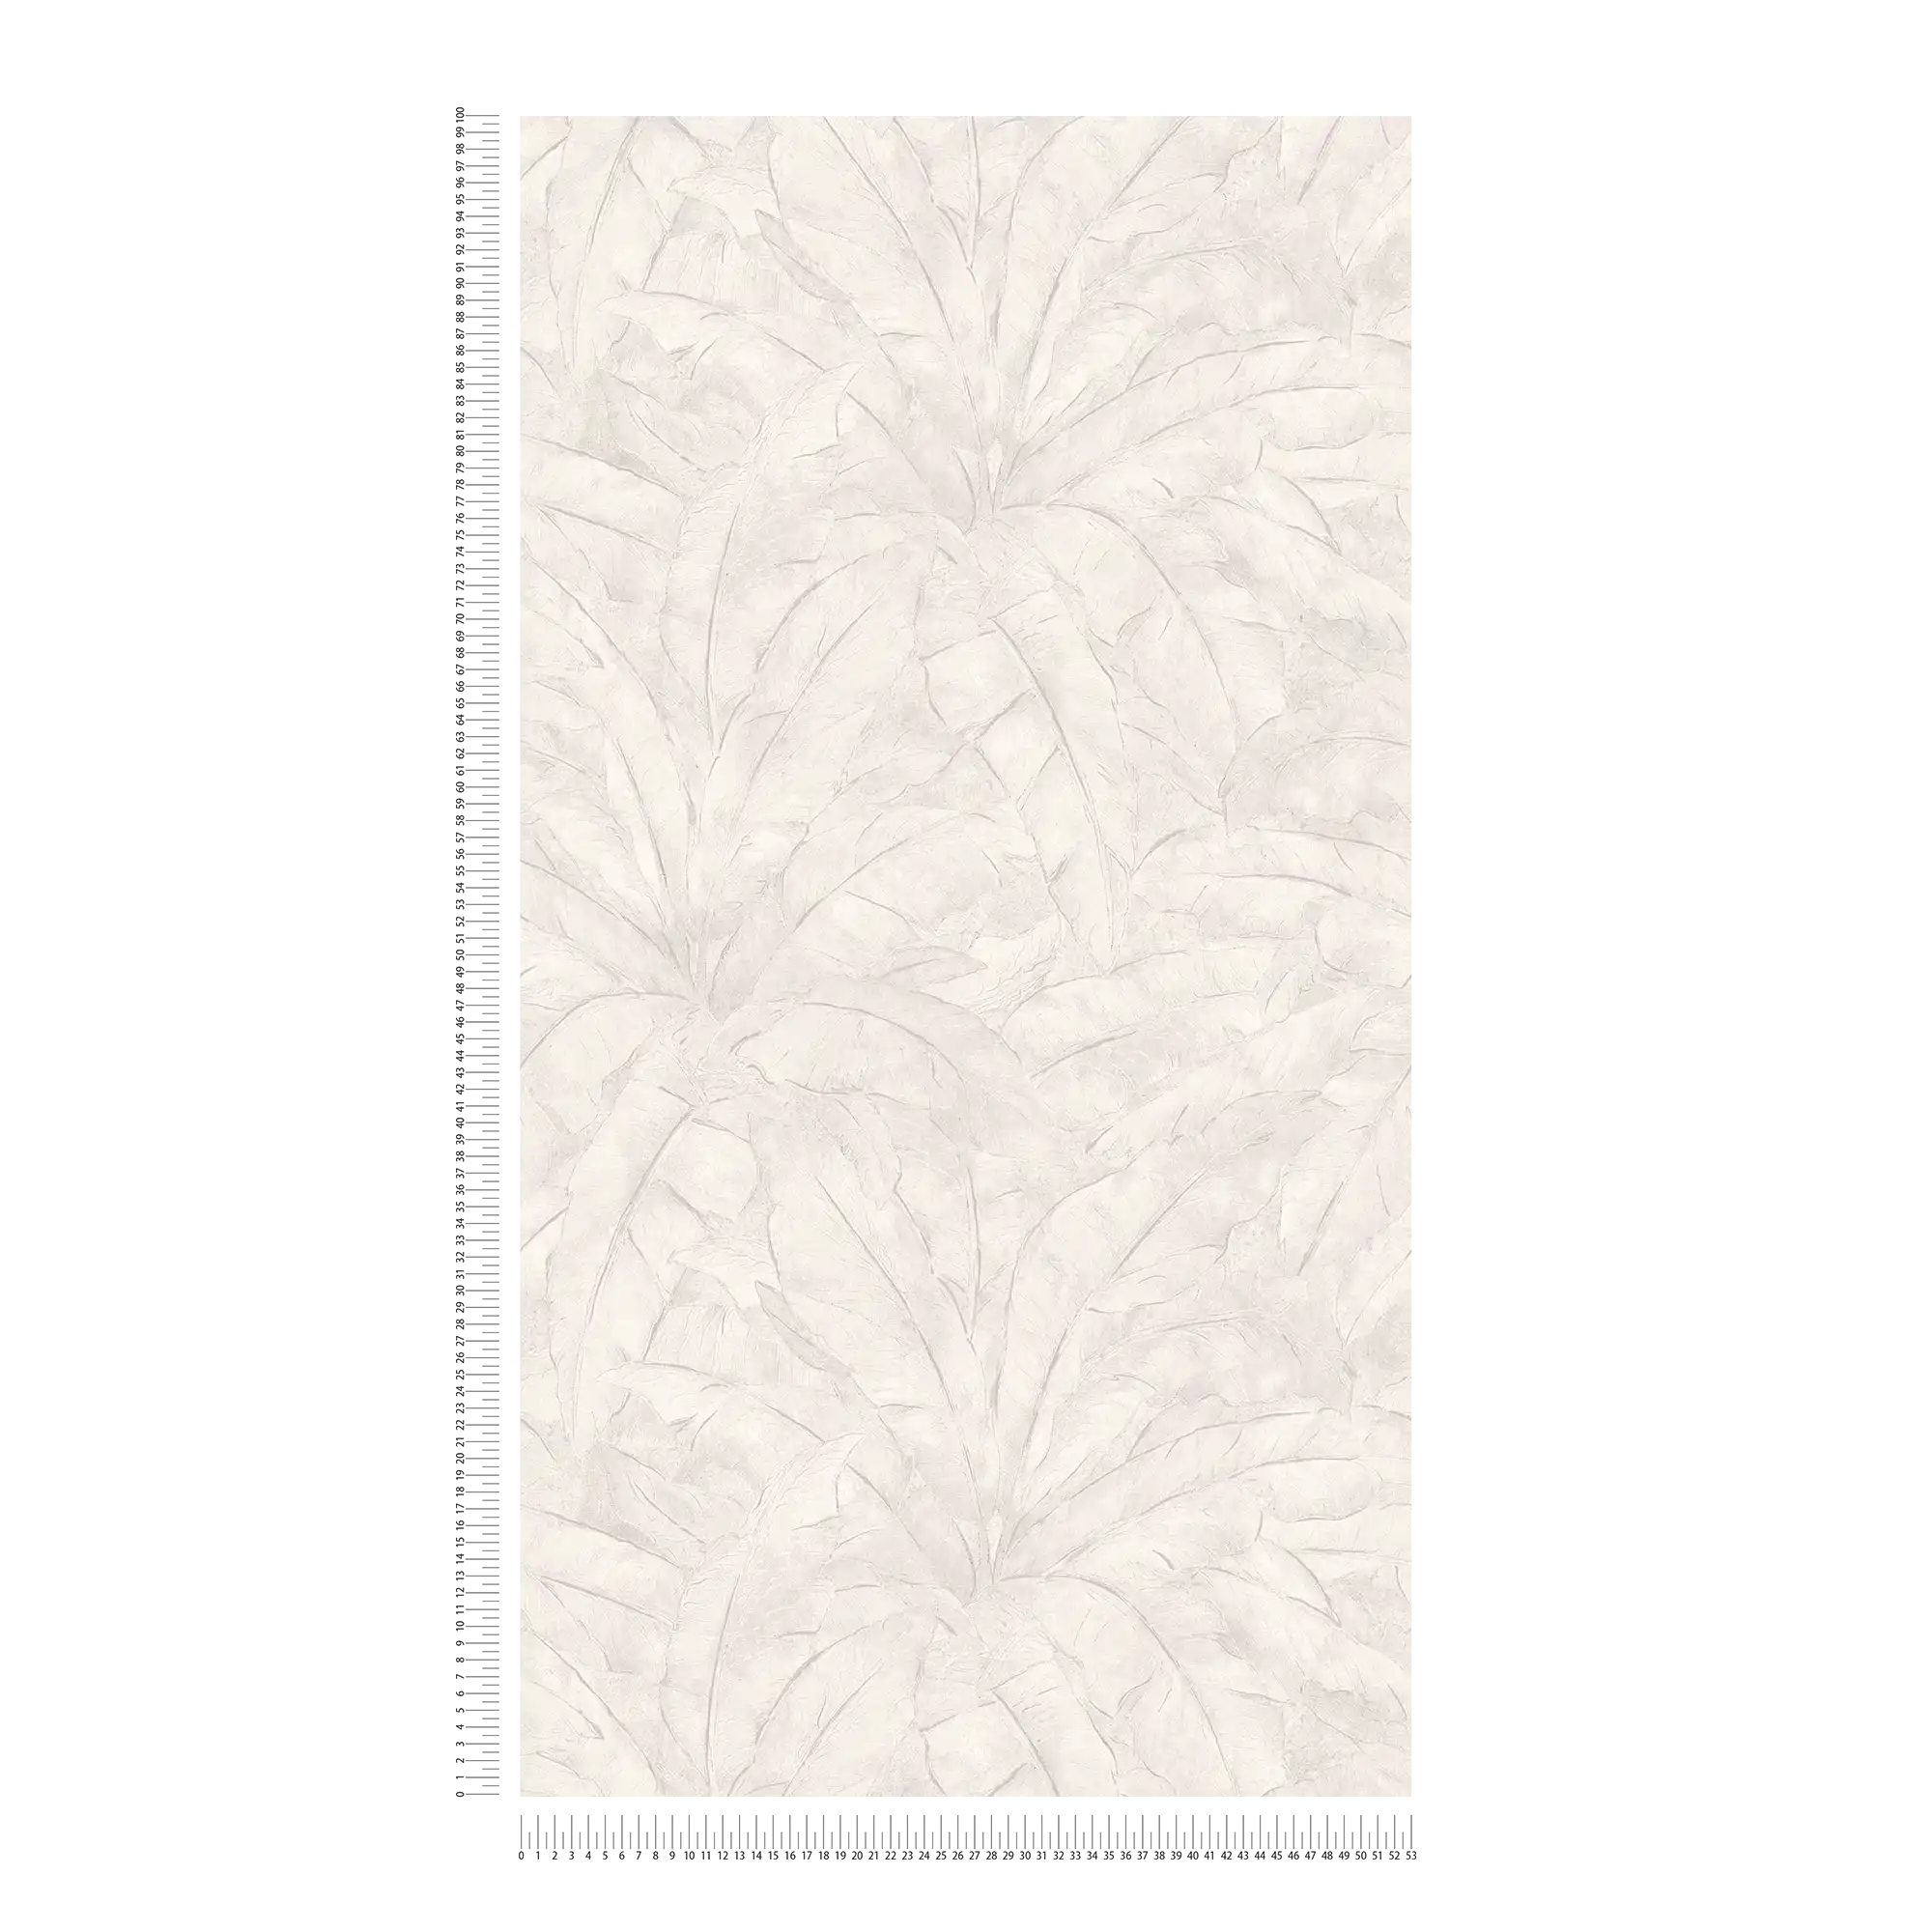             Papier peint jungle avec accent argenté - gris, argenté, blanc
        